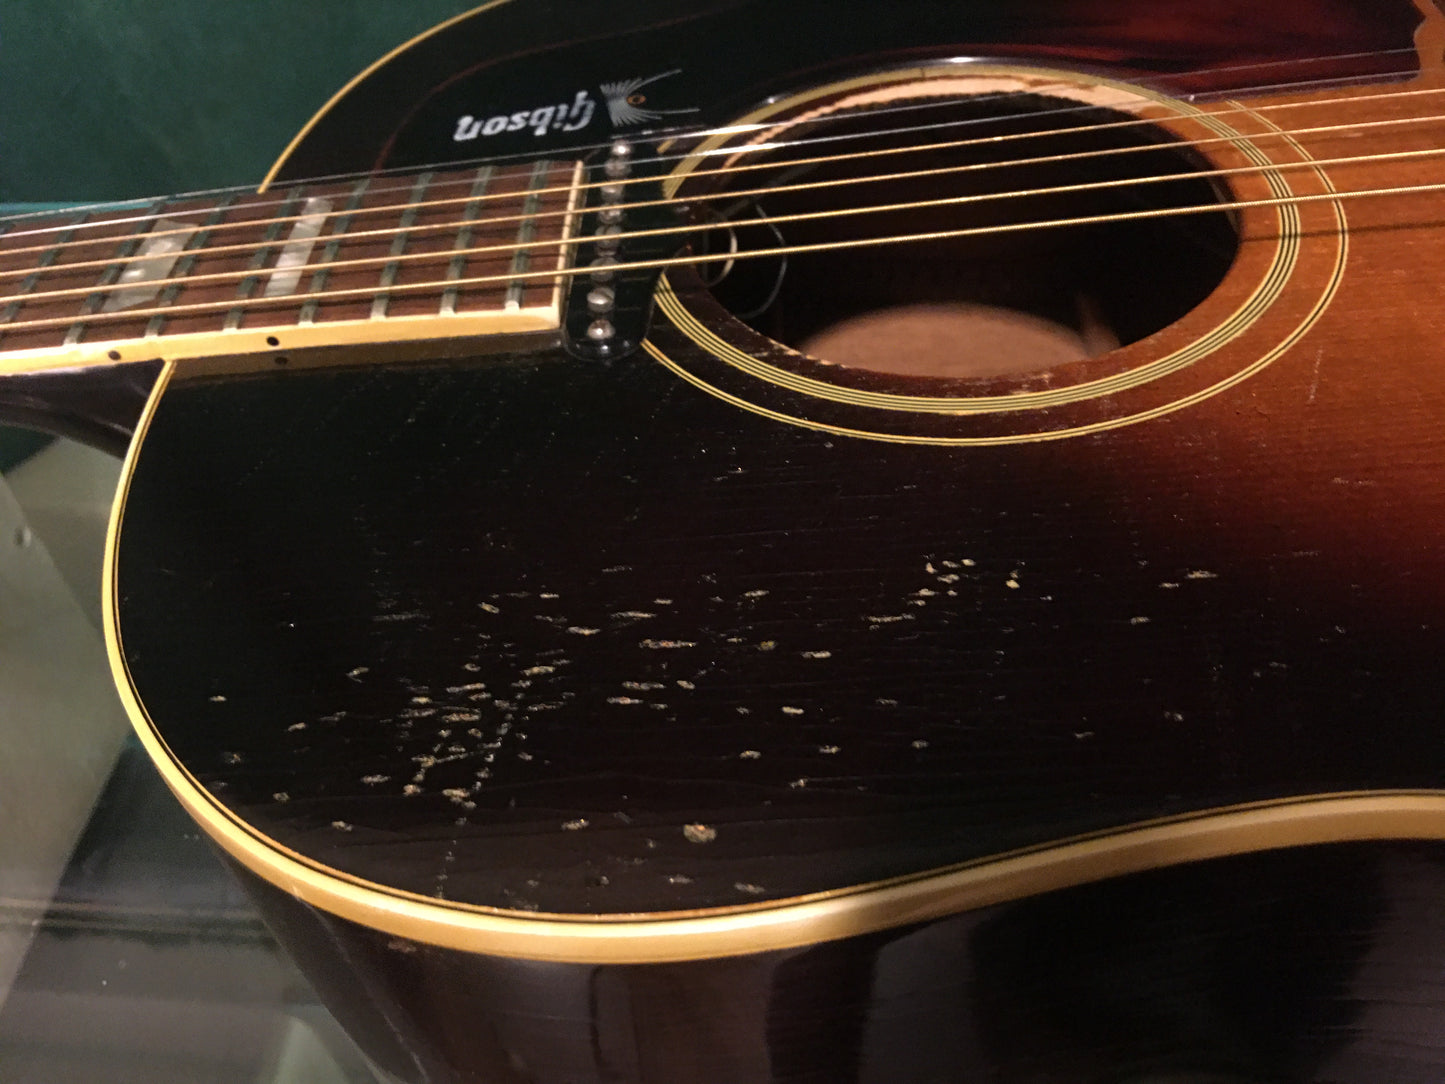 1968 Gibson J160E Sunburst Acoustic Guitar Beatles Lennon Harrison